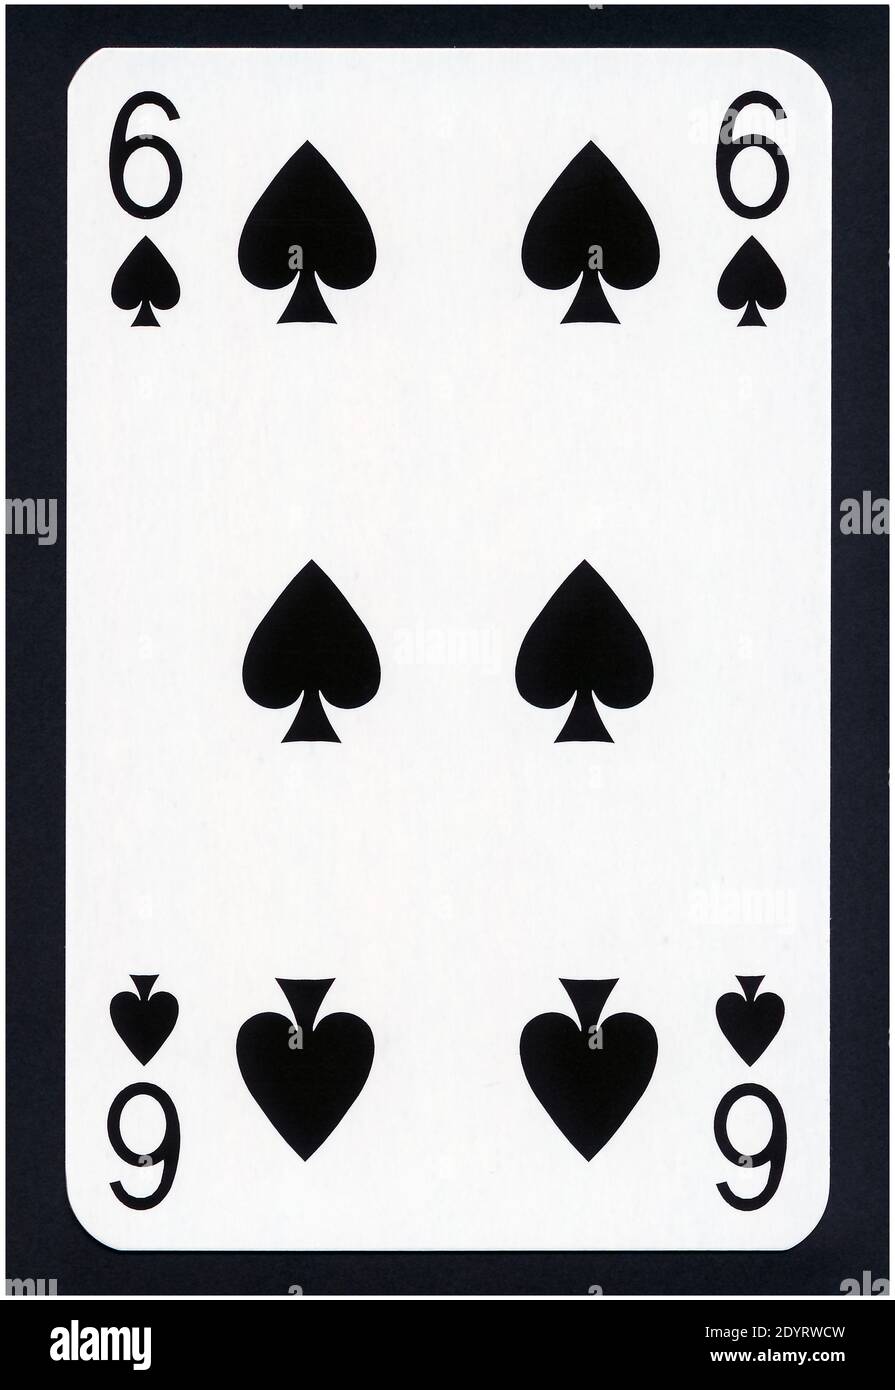 Cartes à jouer de Spades suit isolé sur fond noir - XXL de haute qualité. Banque D'Images